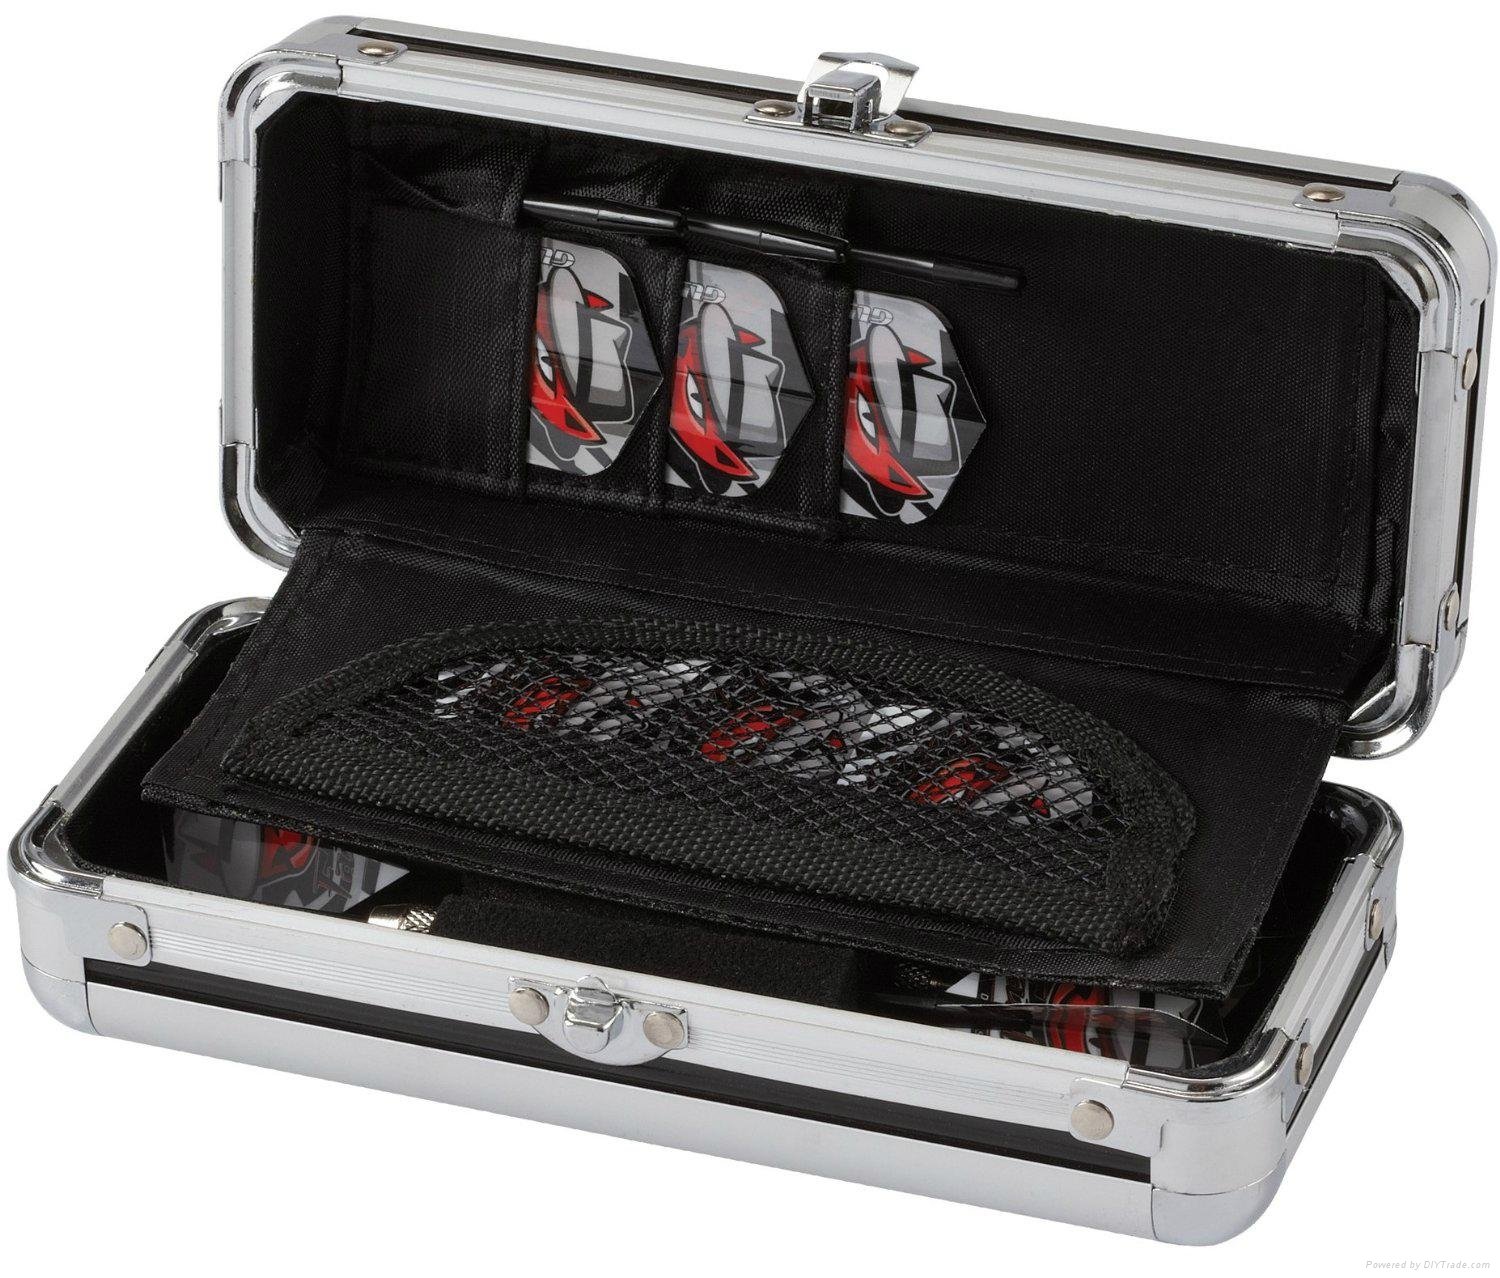 RG006 Pro Dart Aluminum Case 5